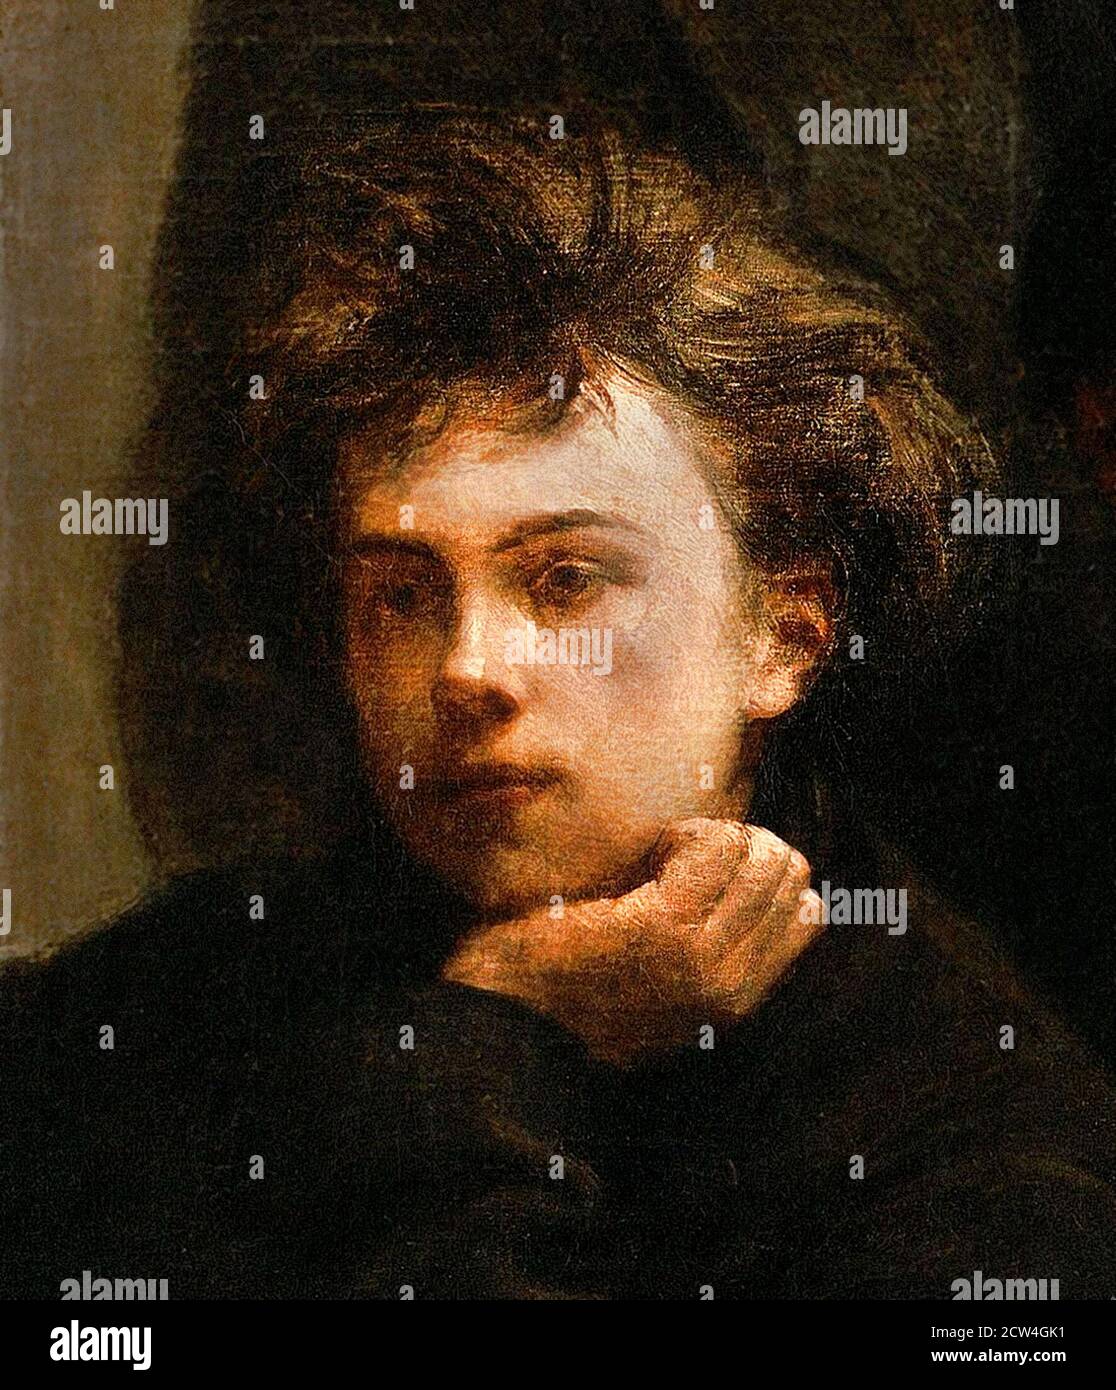 Arthur Rimbaud. Portrait du poète français, Jean Nicolas Arthur Rimbaud (1854-1891), âgé de 18 ans, par Henri Fantin-Latour, huile sur toile, 1872. Détail d'un tableau plus grand « coin de table ». Banque D'Images